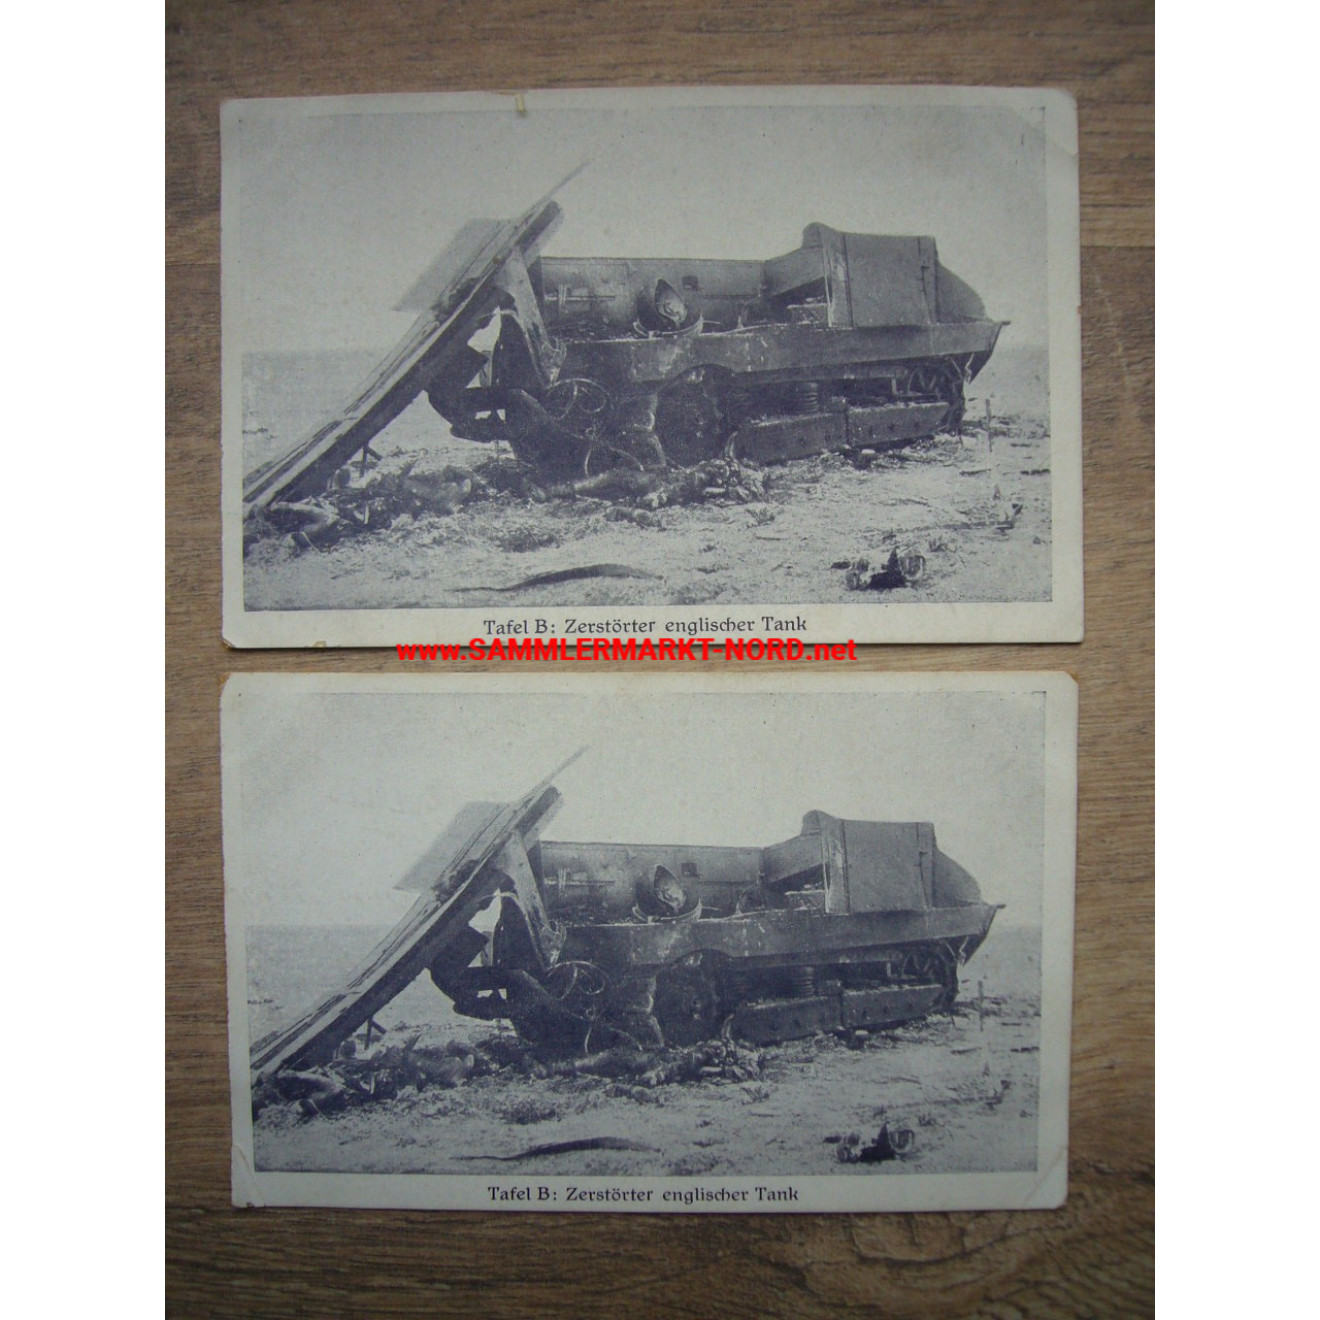 2 x Postkarte 1918 - zerstörter britischer Panzer